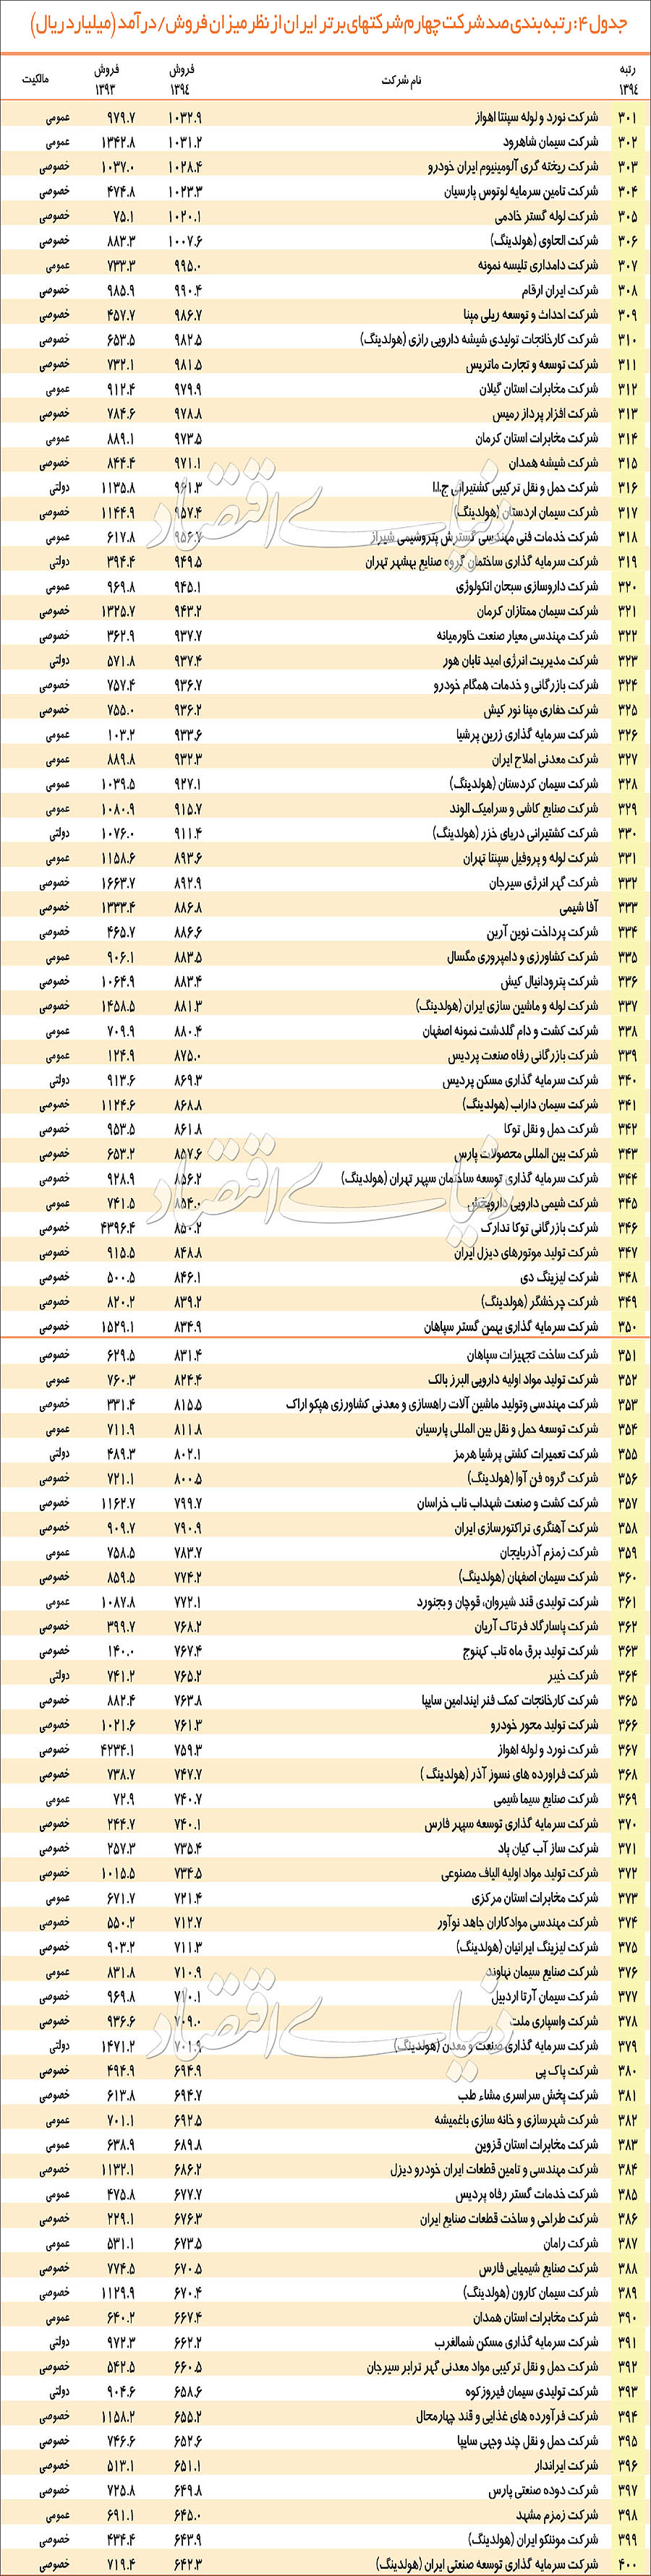 رتبه بندی 500 شرکت برتر ایرانی از نظر فروش و درآمد+جدول